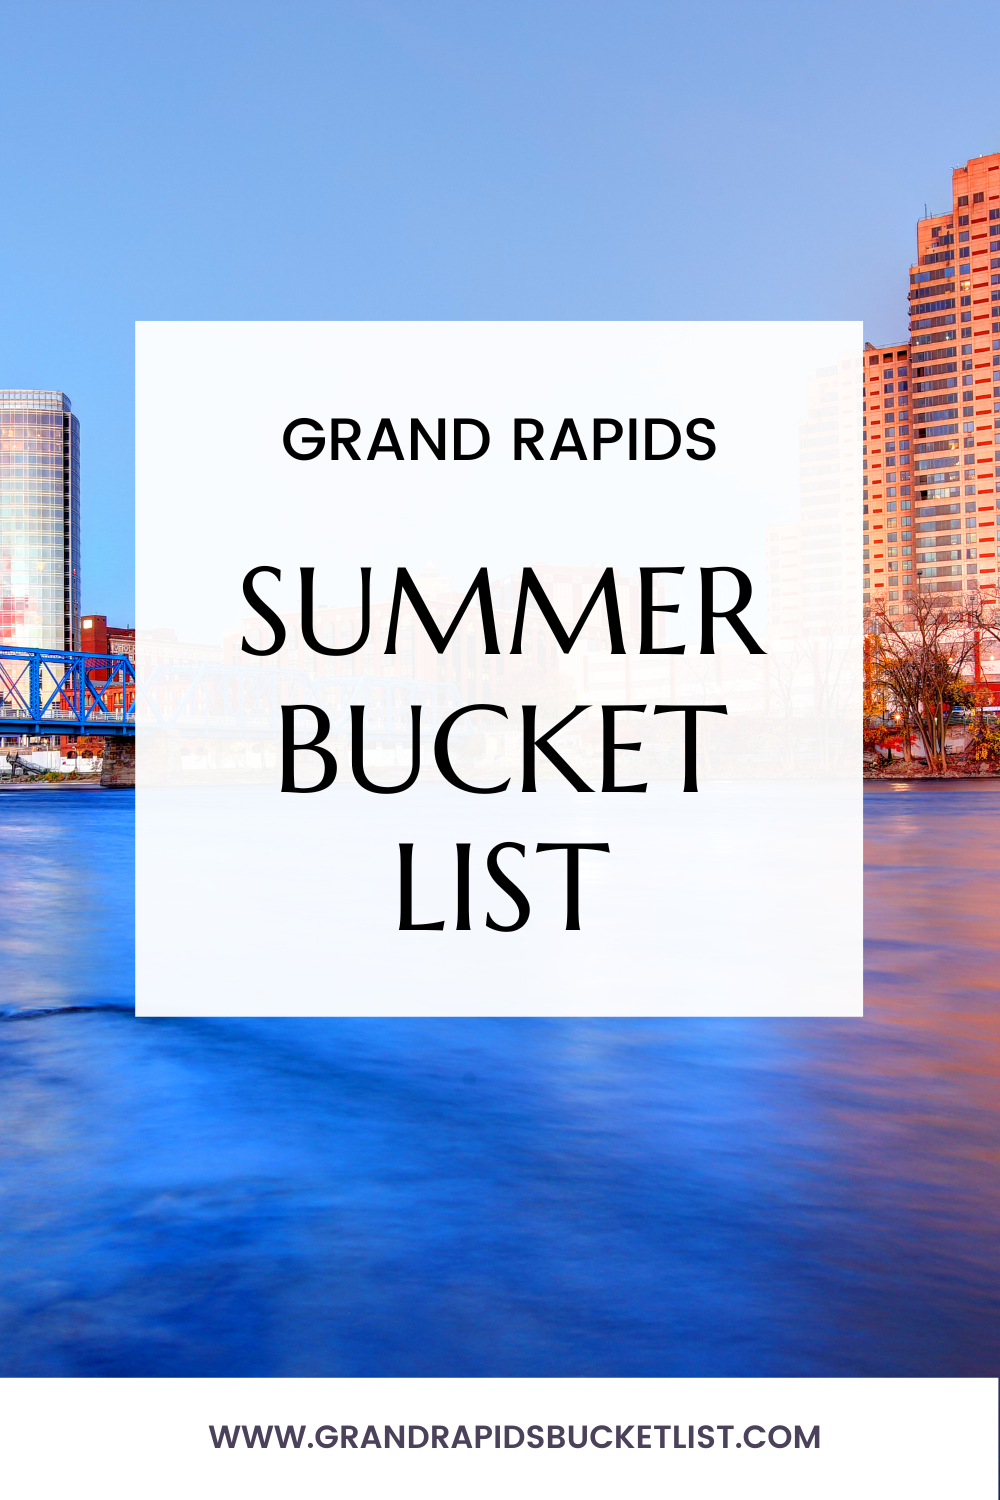 Summer bucket list grand rapids